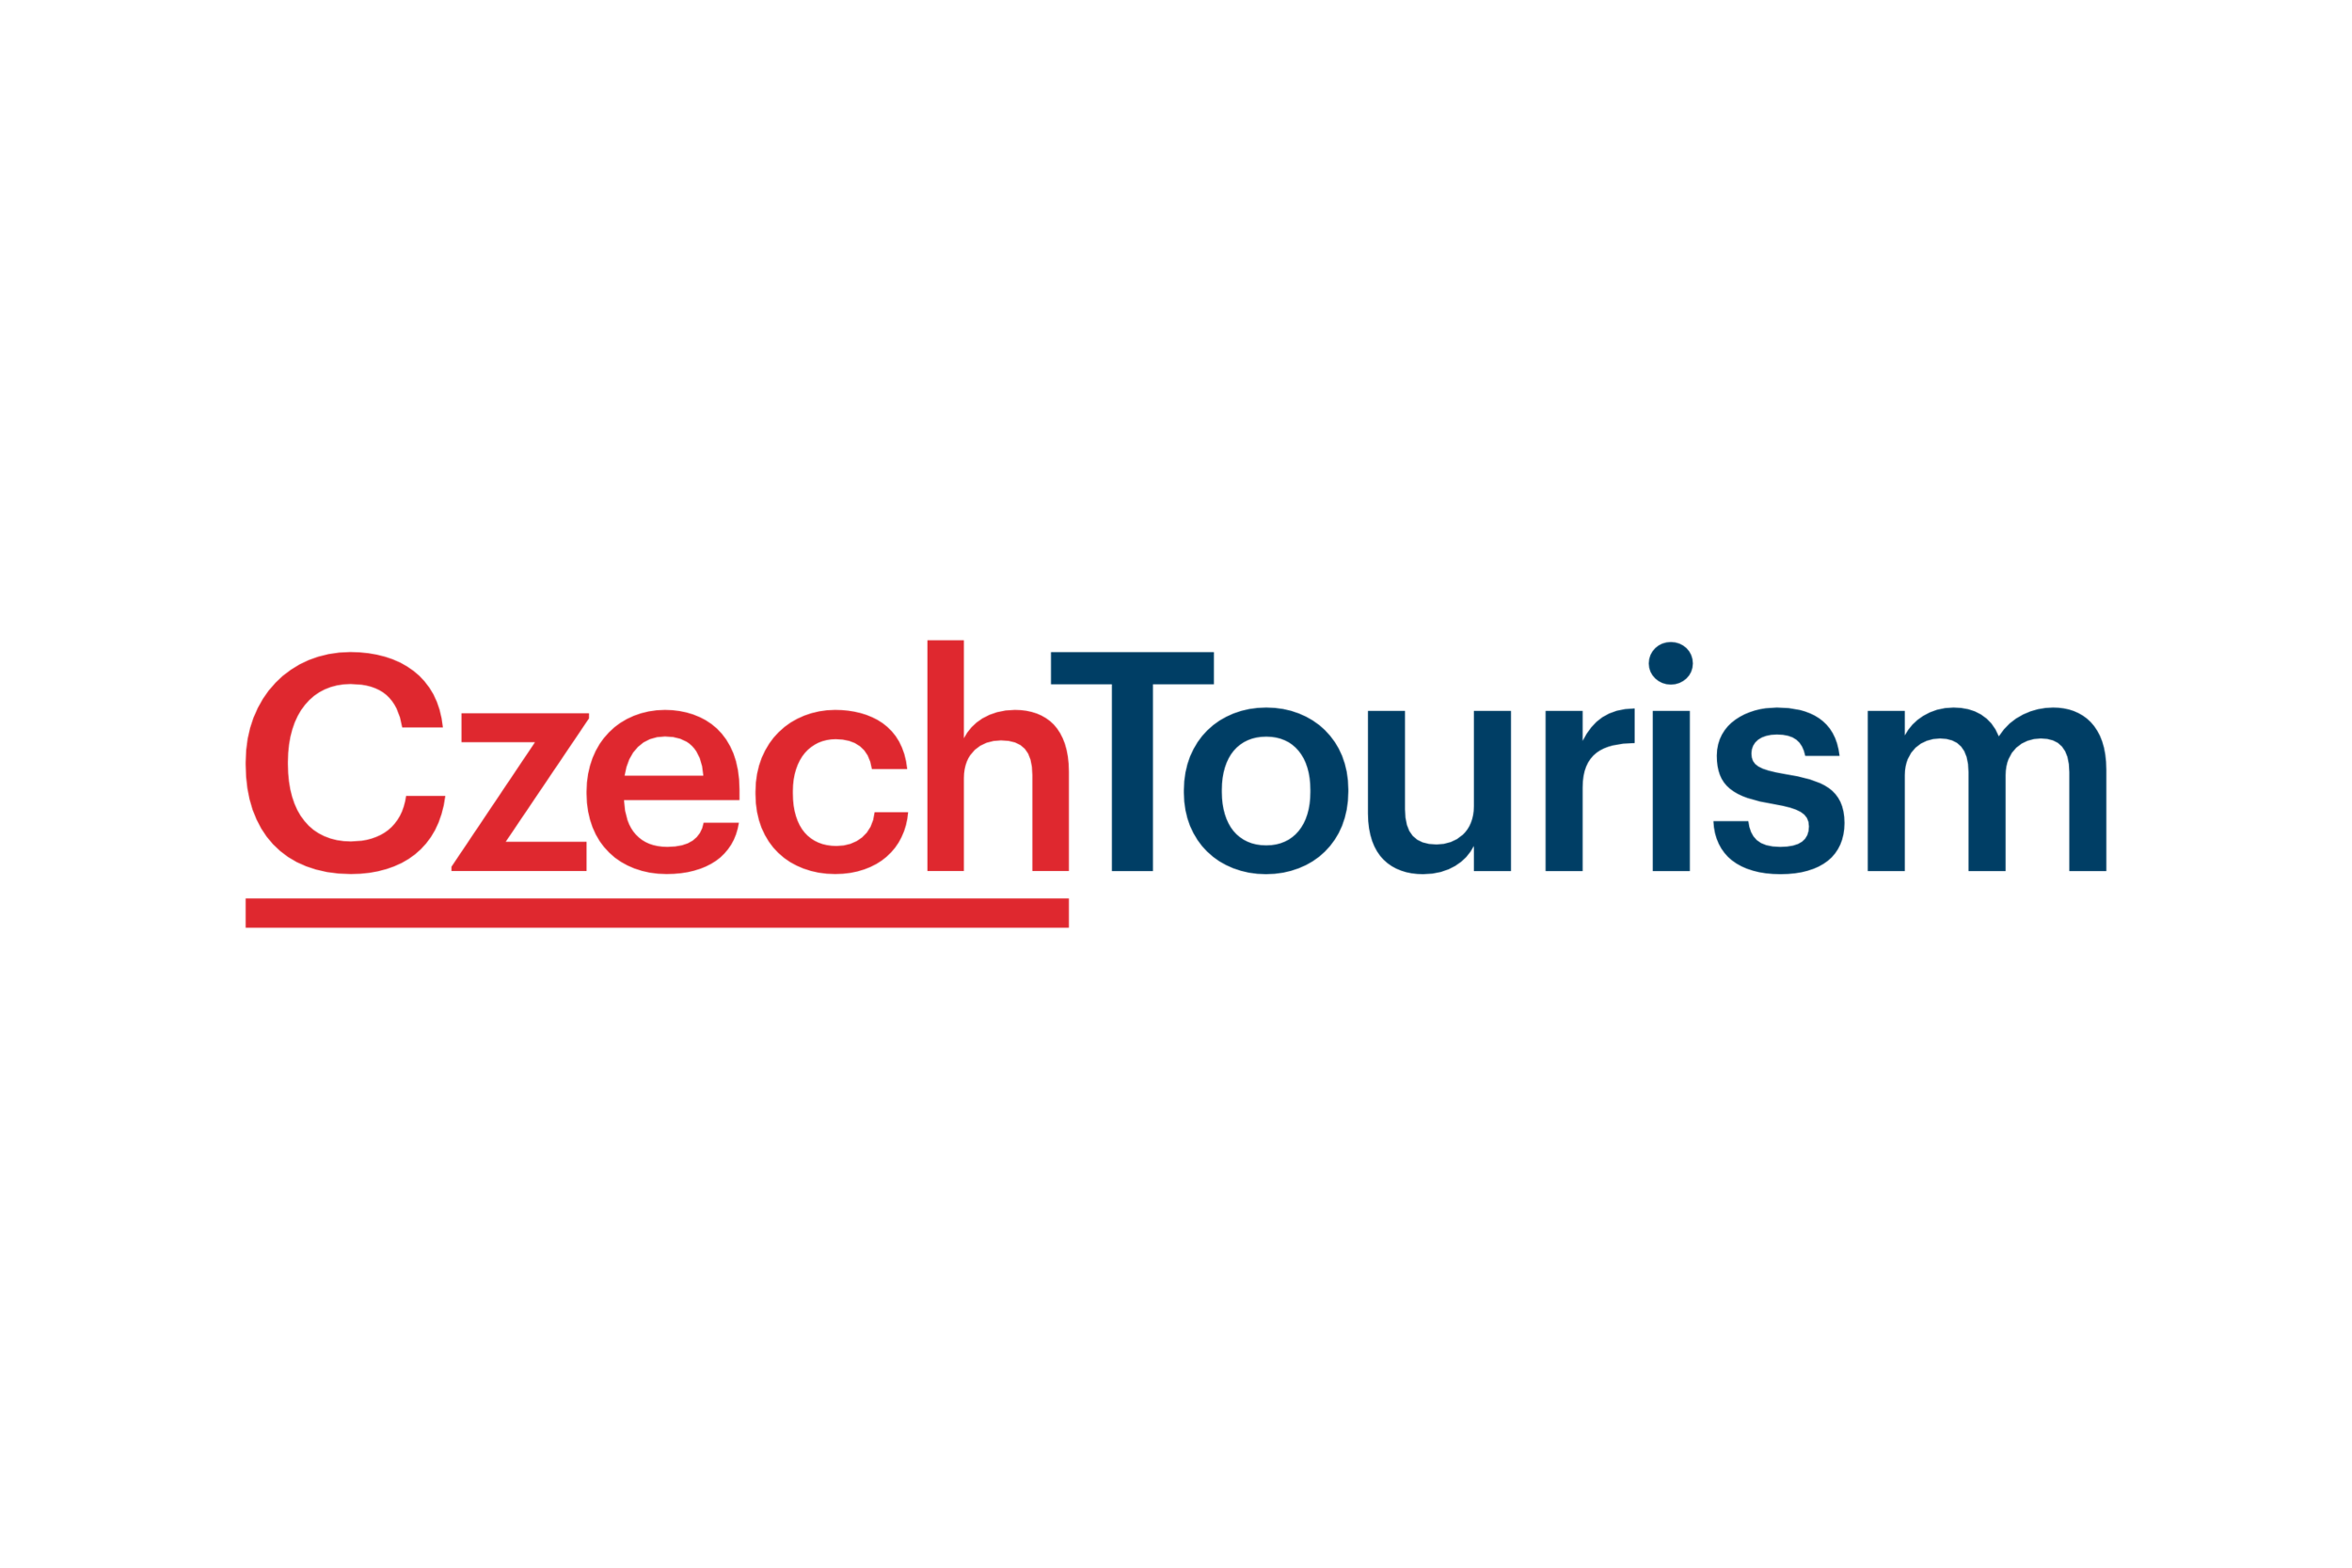 czech_tourism.png